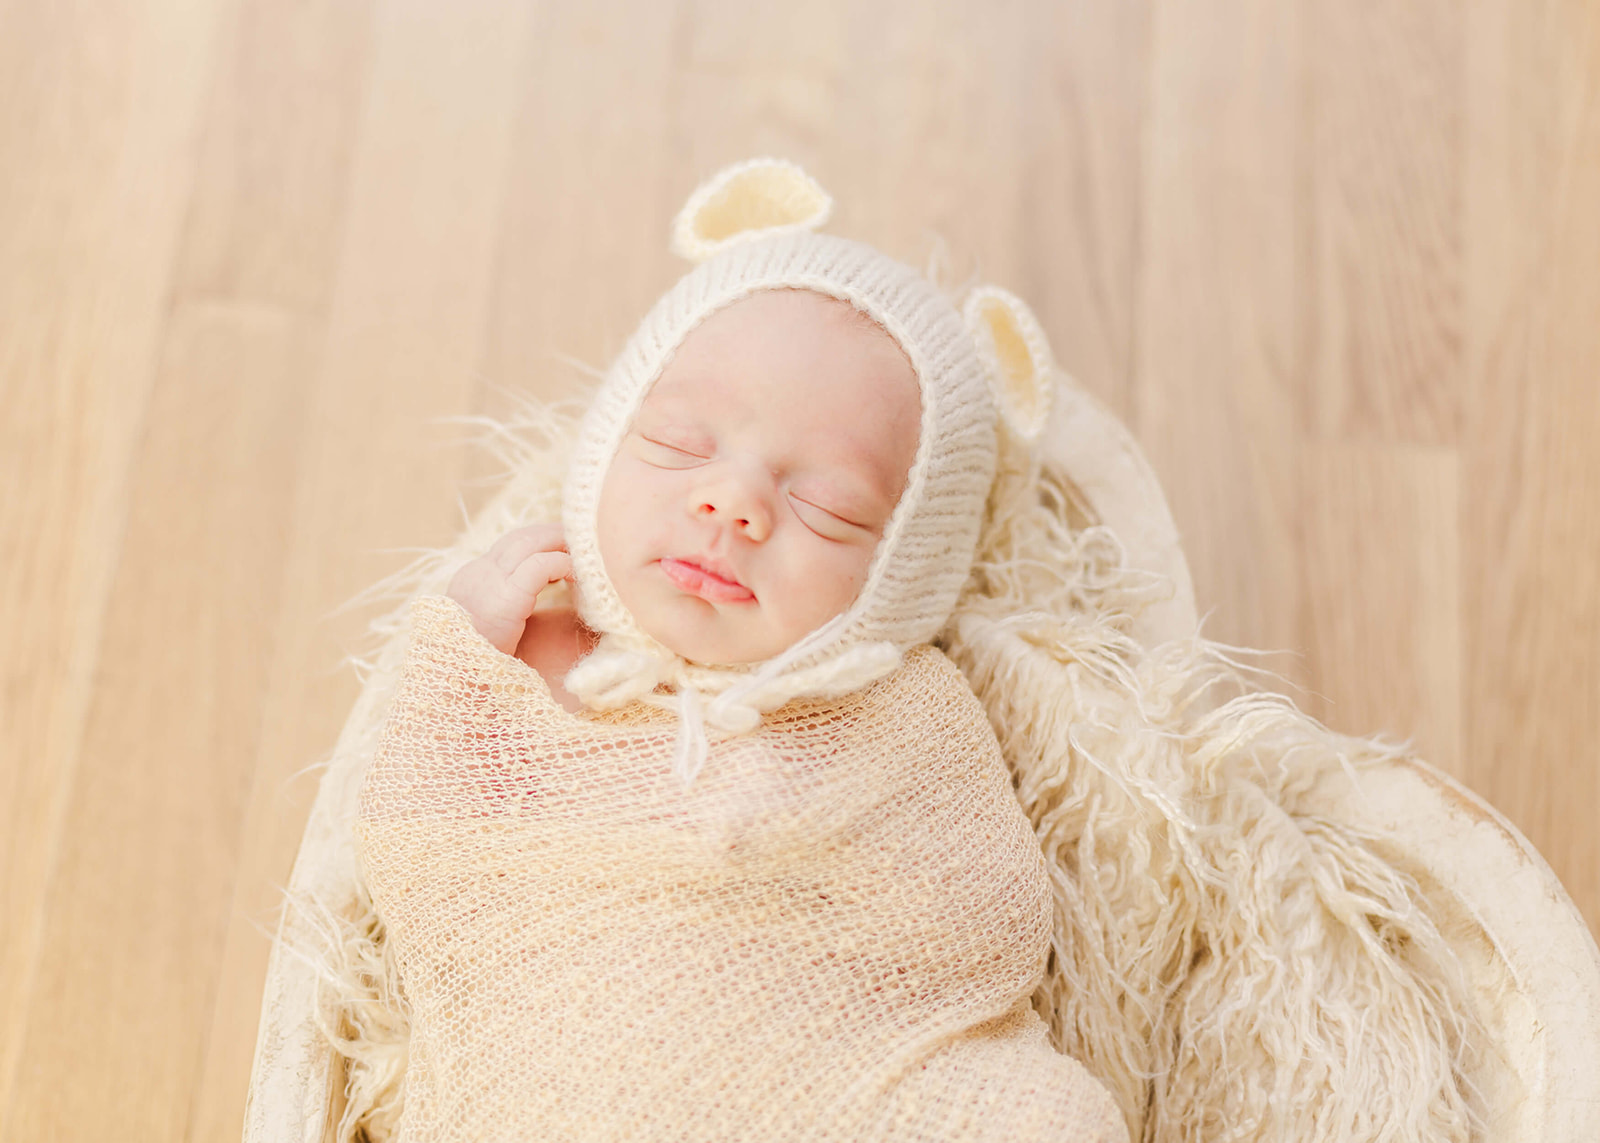 newborn baby with a bear bonnet sleeping